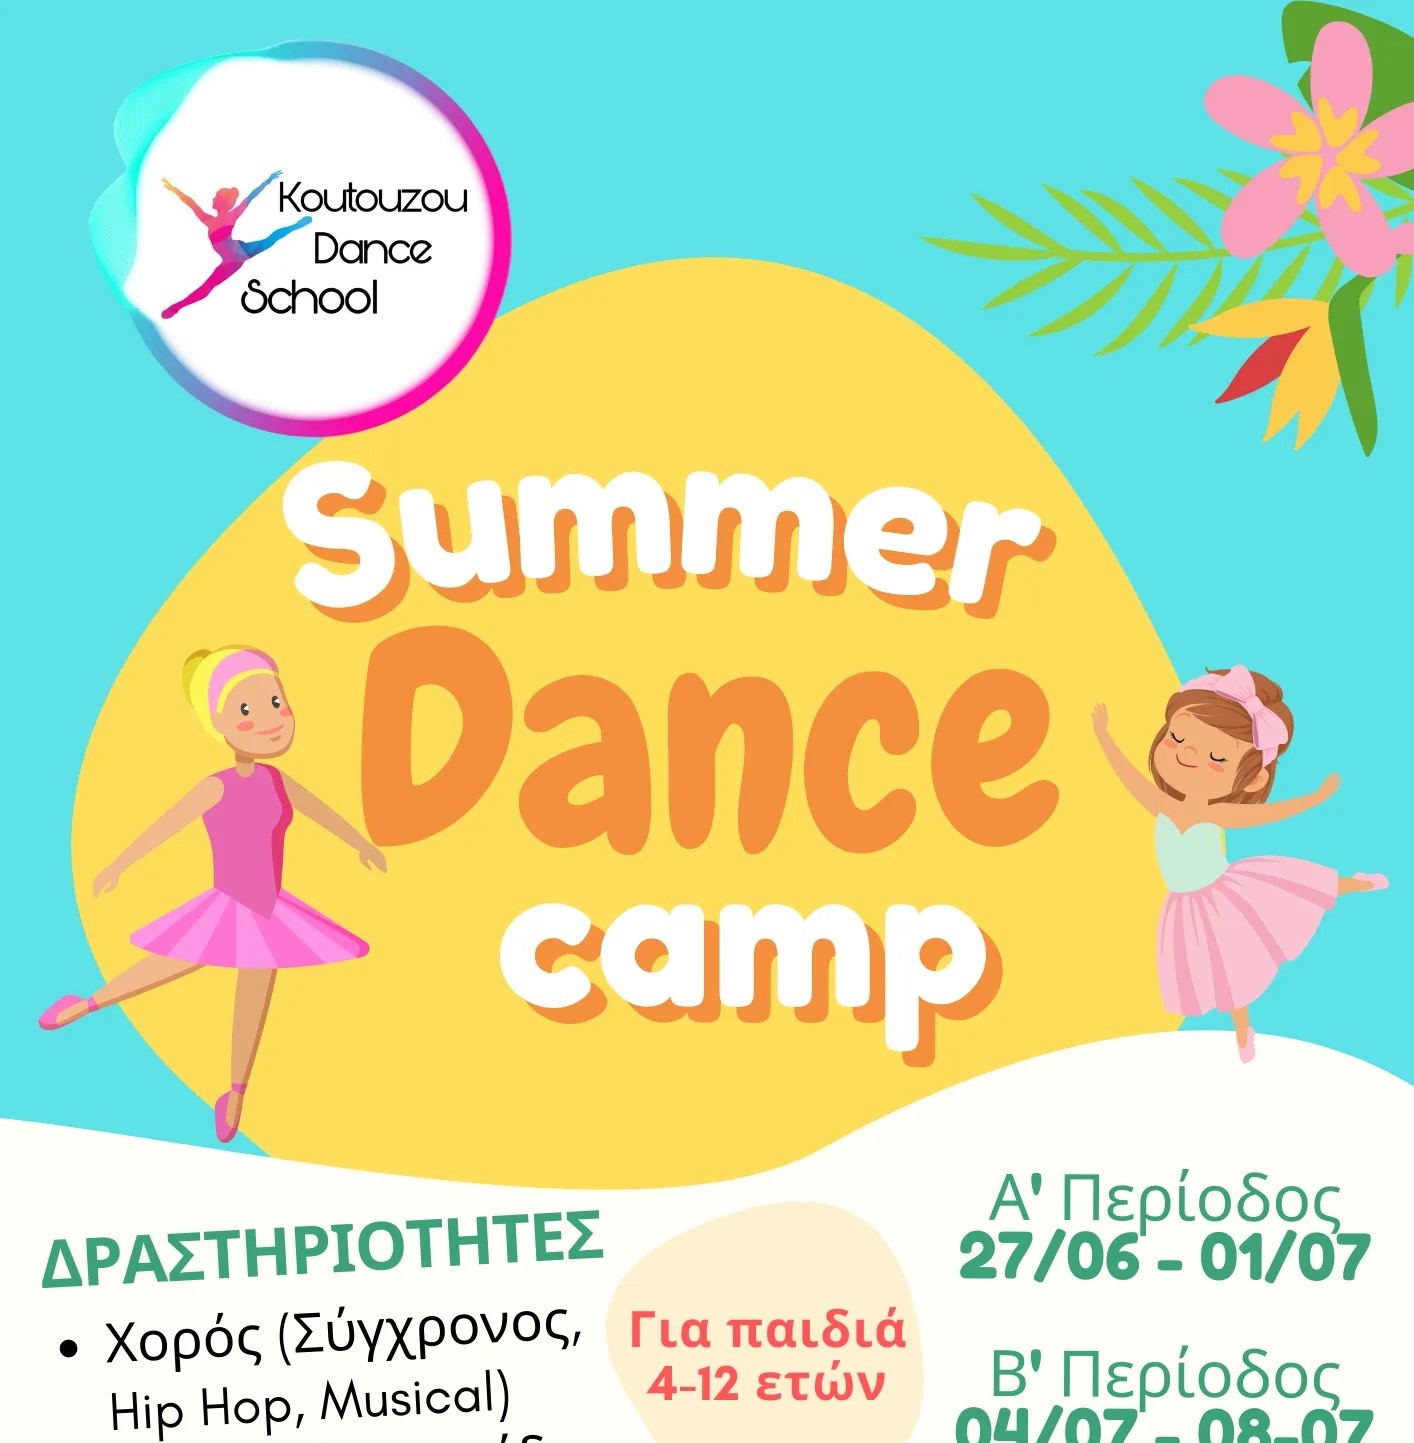 SUMMER DANCE CAMP - KOUTOUZOU DANCE SCHOOL logo